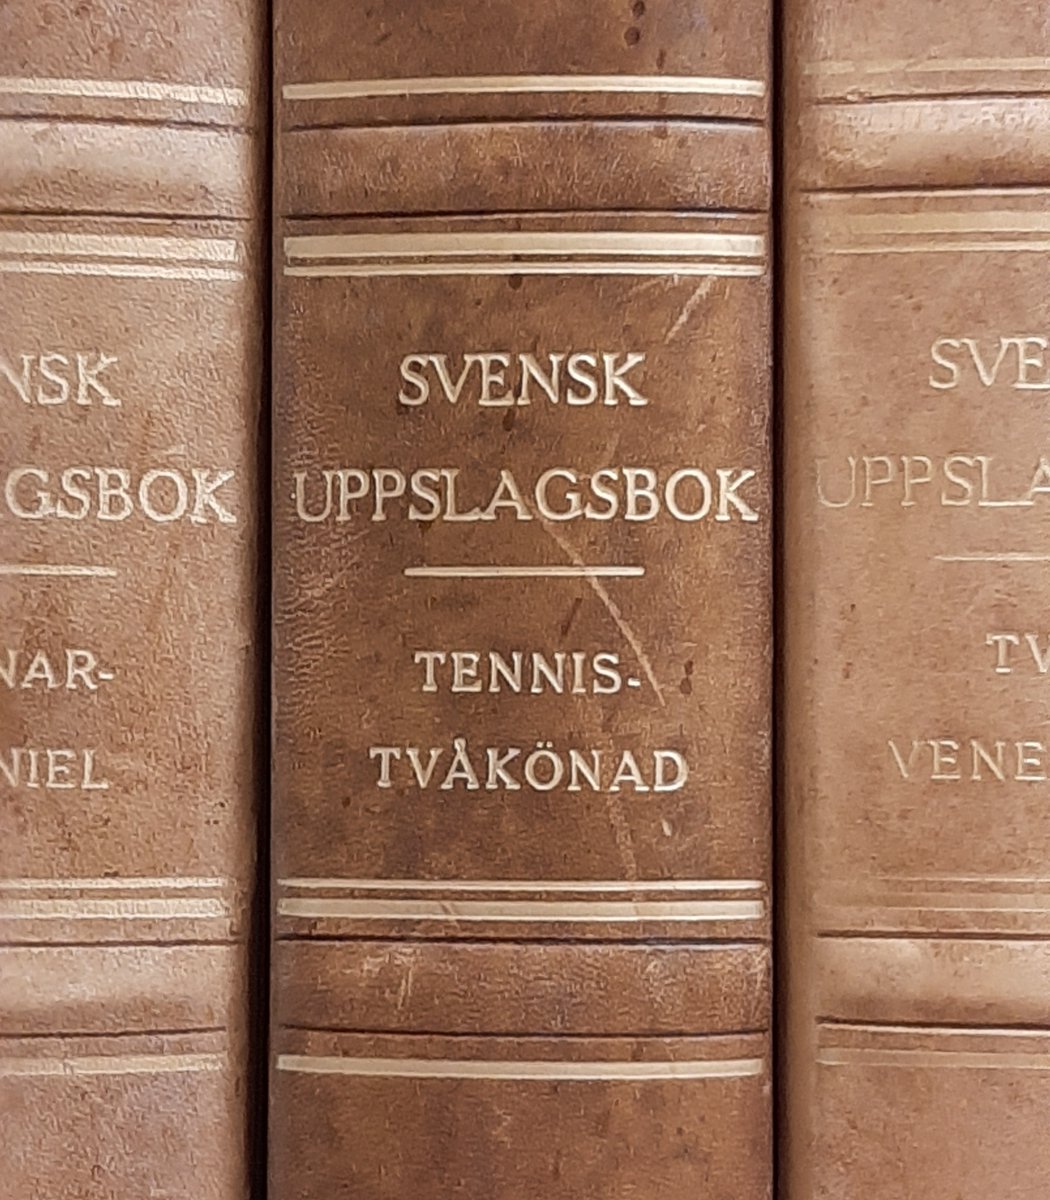 Jag ger er: bandet av Svensk uppslagsbok som också är känt som 'Gustaf V:s liv i sammandrag'.